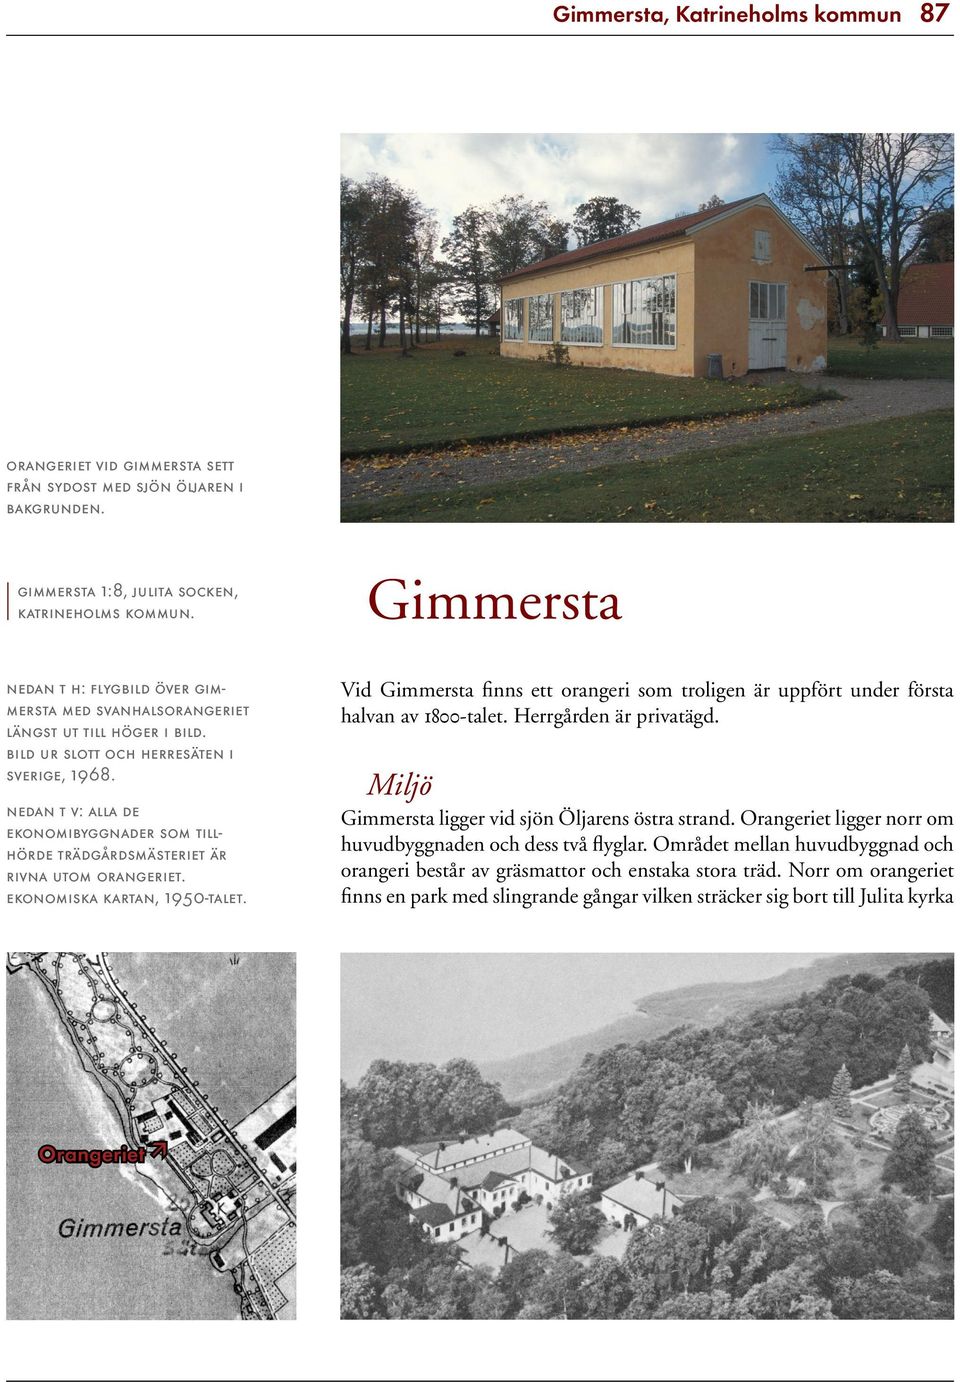 Vid Gimmersta finns ett orangeri som troligen är uppfört under första halvan av 1800-talet. Herrgården är privatägd.